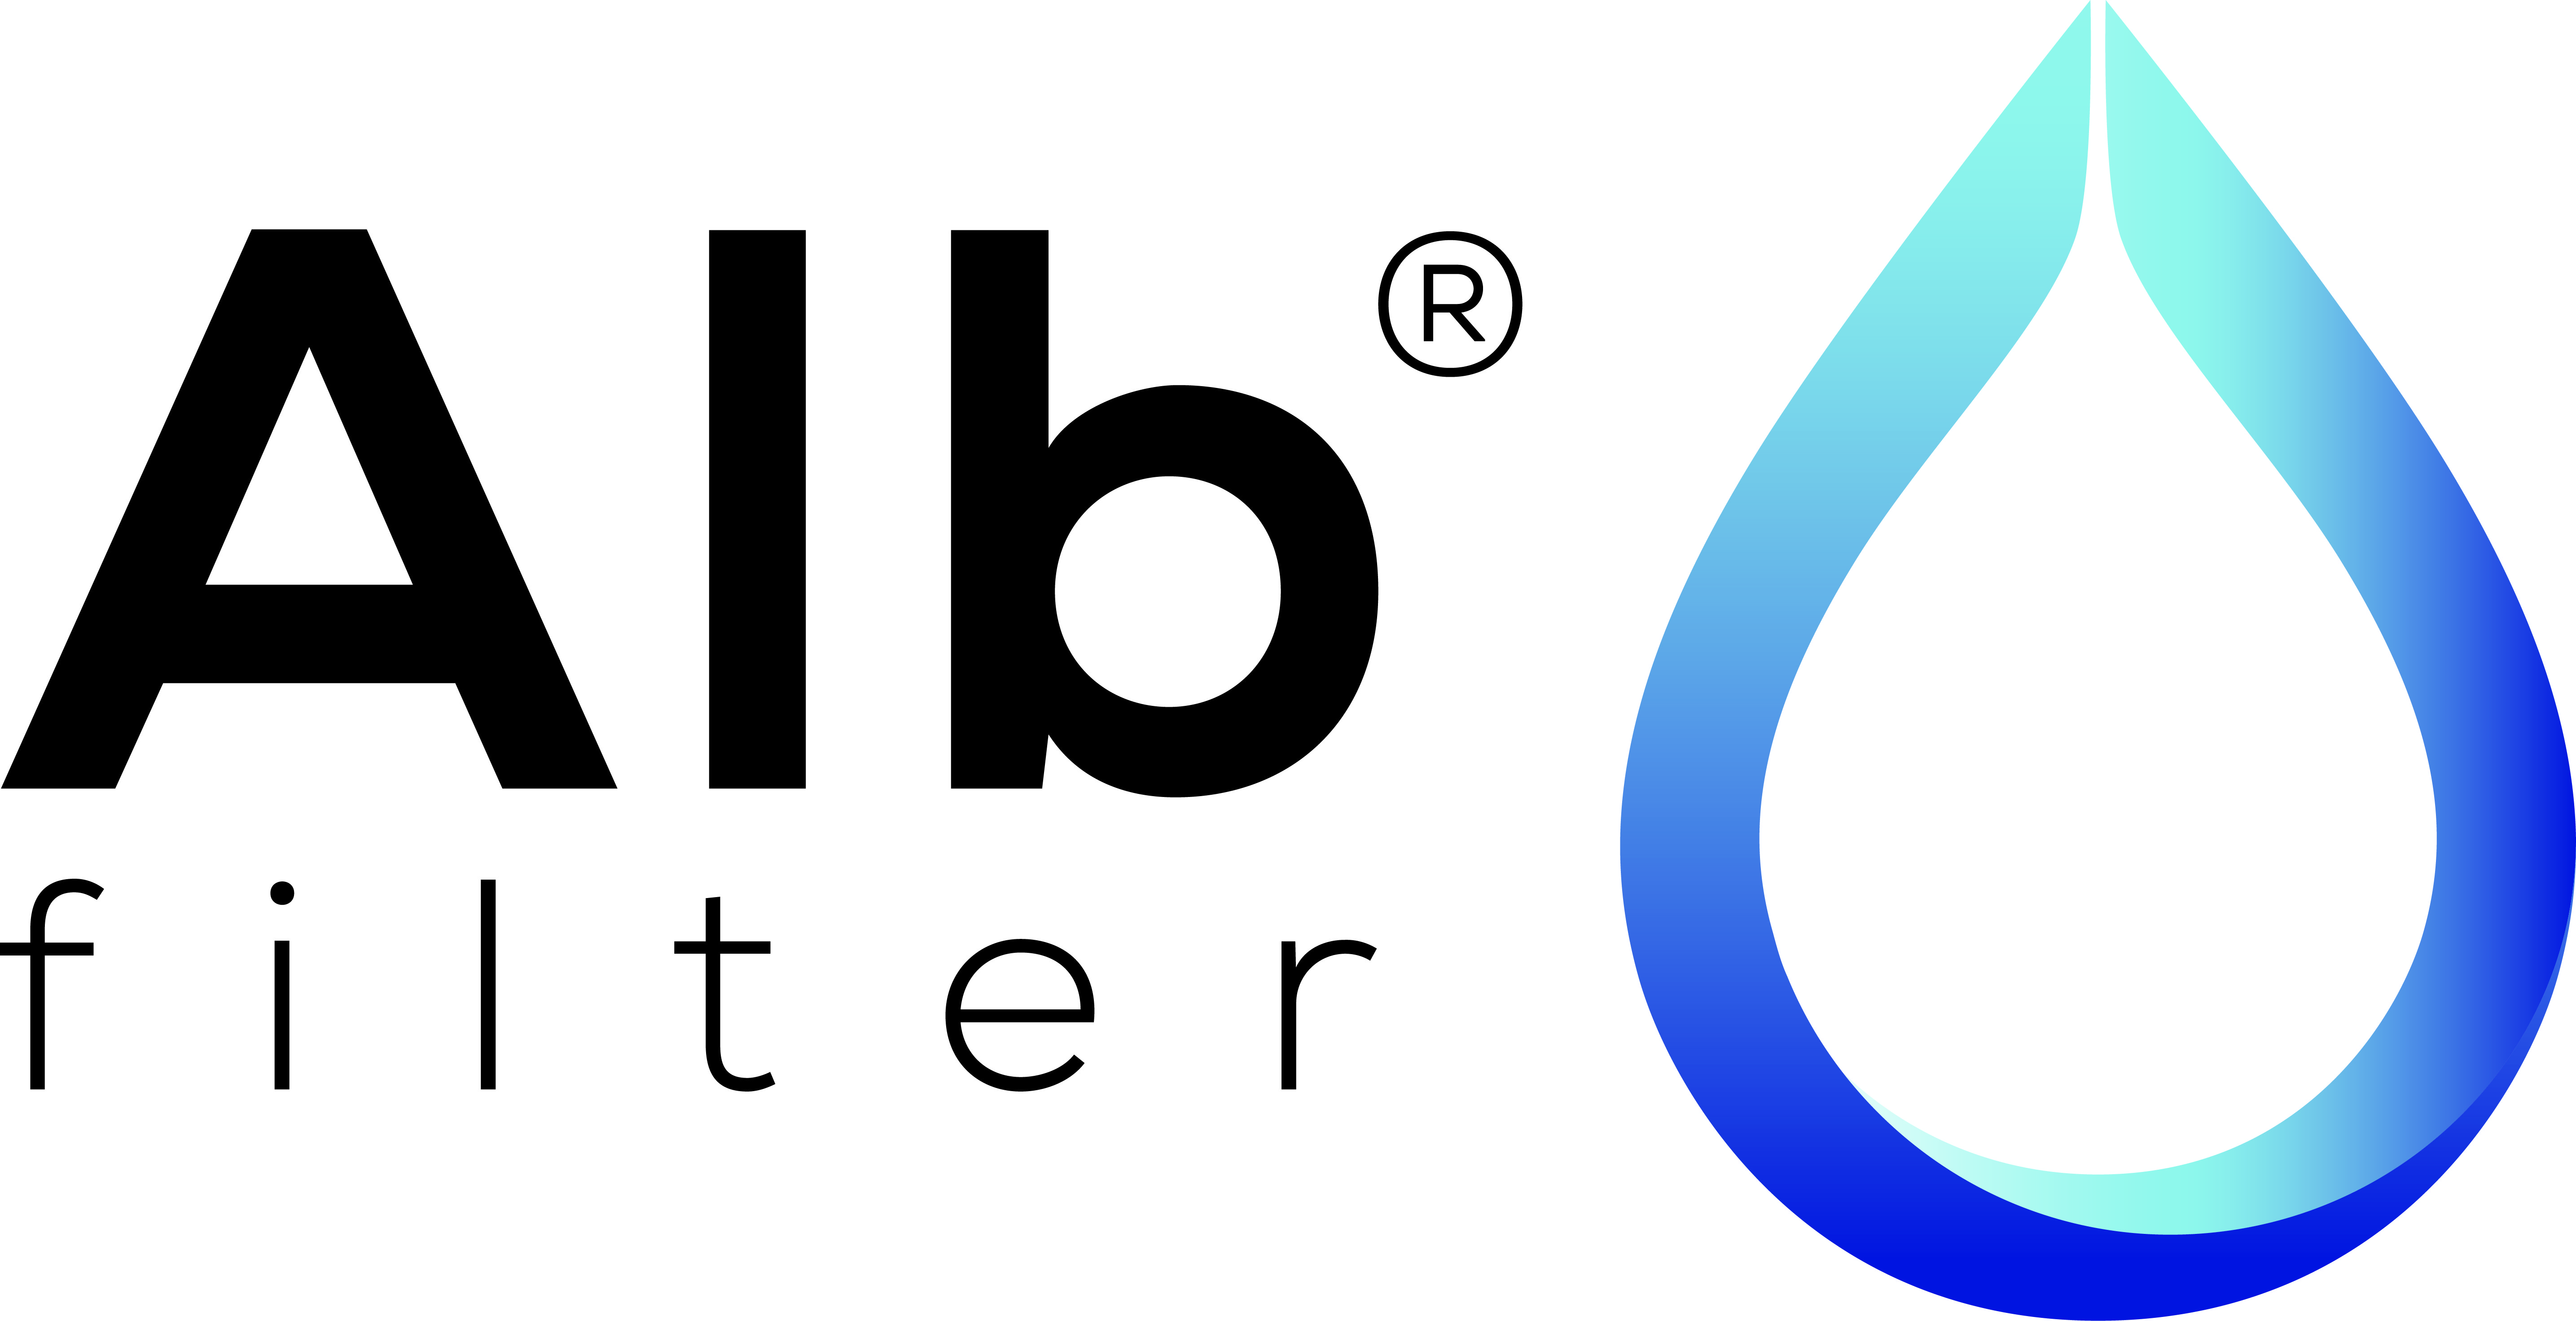 Alb Filter  Duo Installation des Trinkwasserfilter